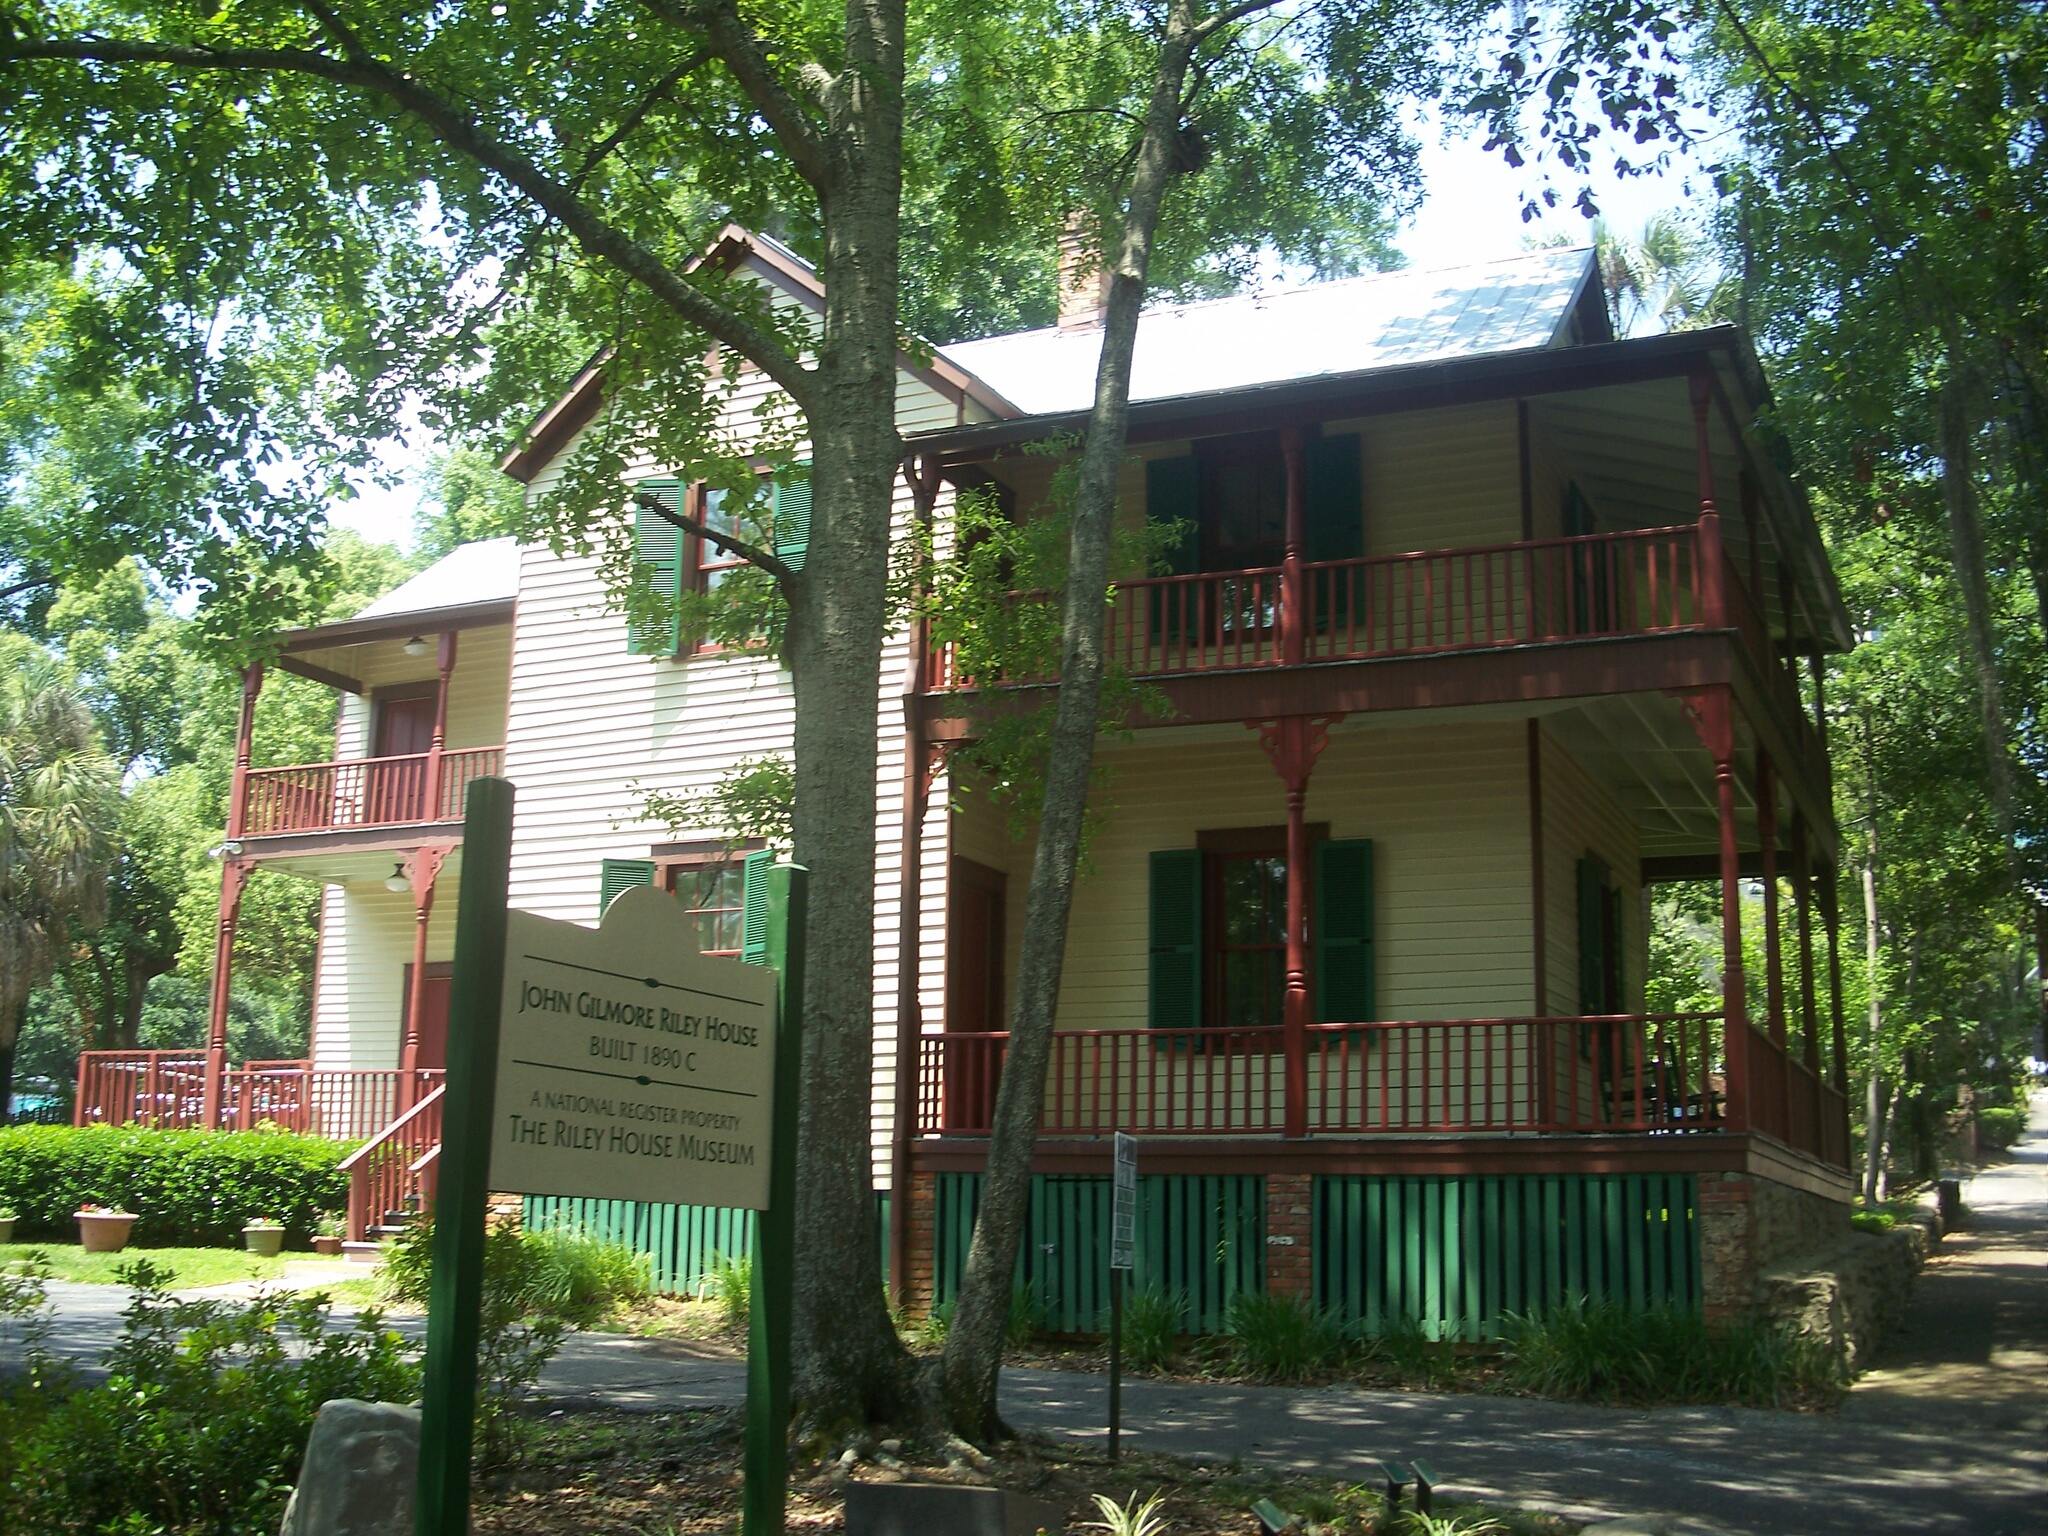 Tallahassee, Florida: John Gilmore Riley House